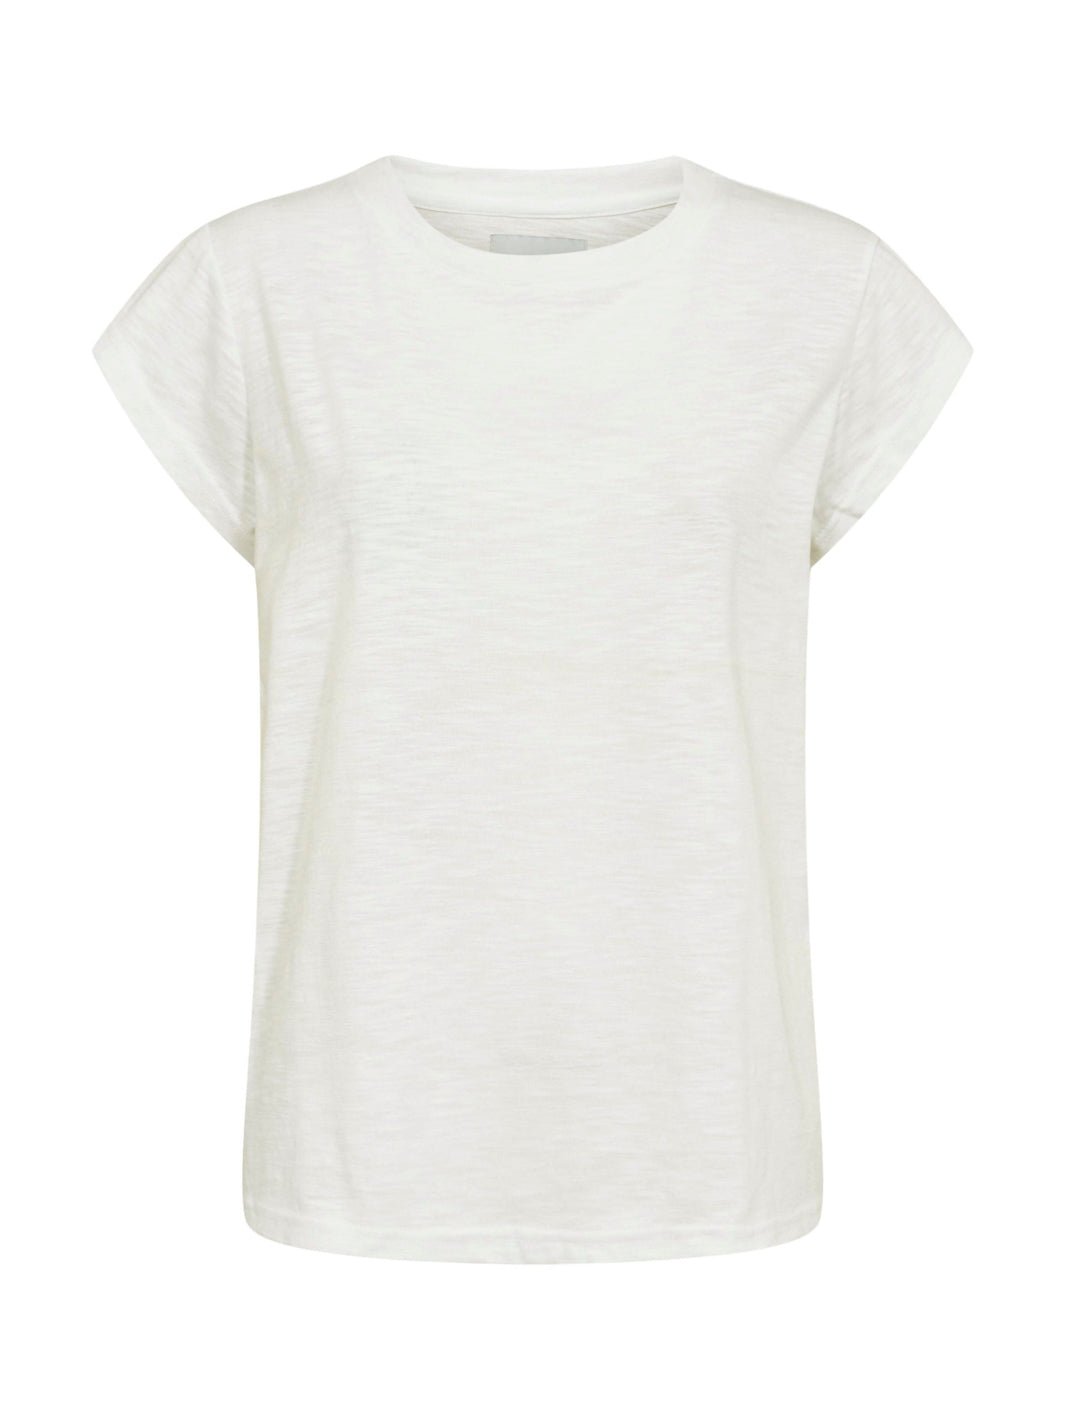 Liberté Ulla t-shirt off white - Online-Mode